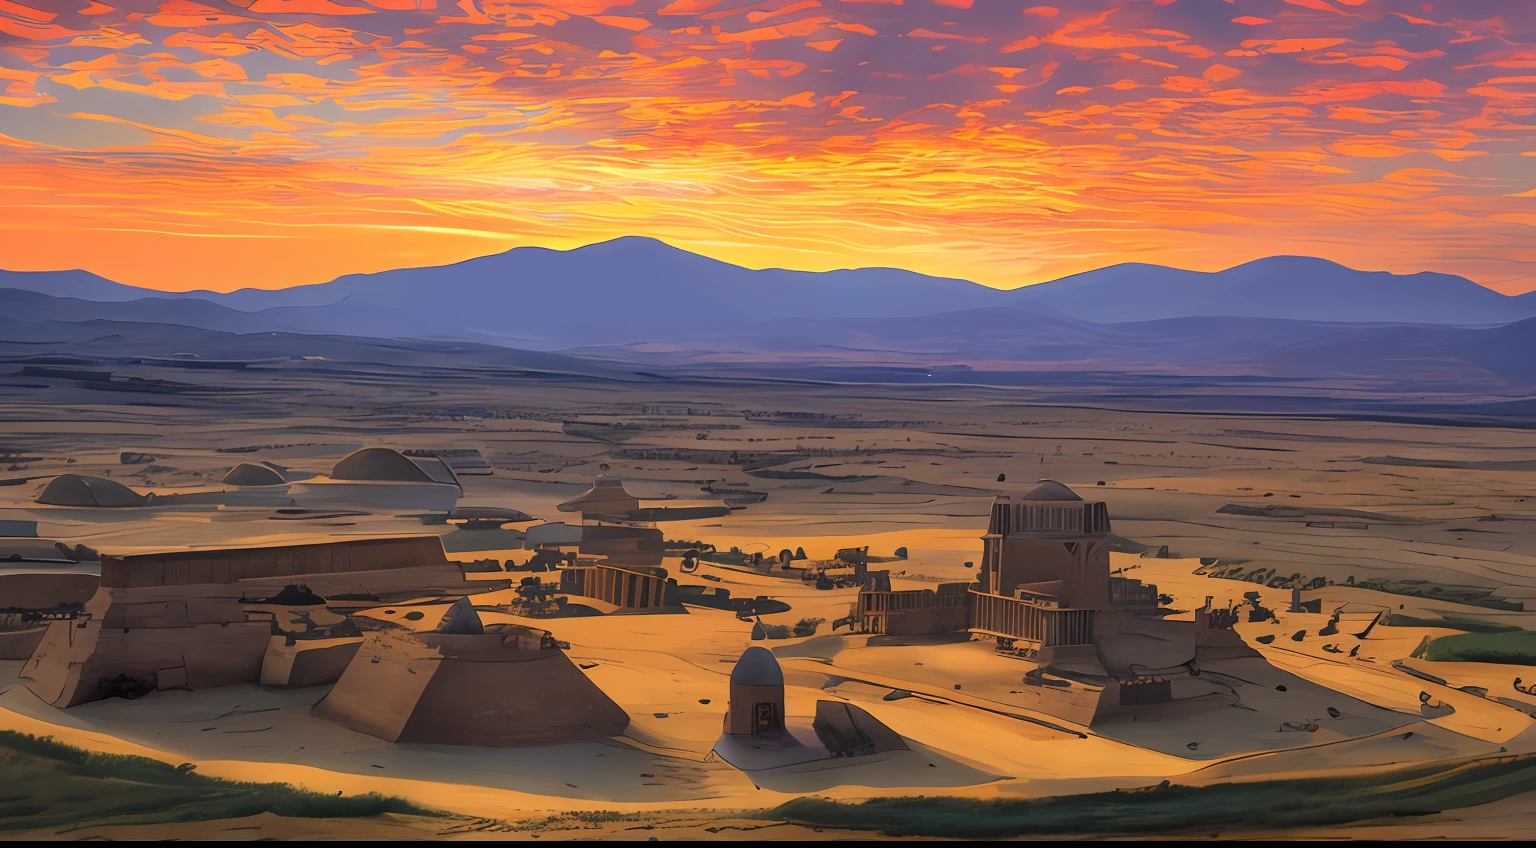 700年以上の帝国, アクスムアフリカ, 夕日の風景を捉えた素晴らしい写真, マスターパーツ, CGSociety のトレンド, 4K, 8k, ハードディスク, [アートステーション:1], コンセプチュアルアート, 非常に詳細な, 鋭い焦点, [表面下散乱:1], 中世と近世のアクスムのガブリエル・レケギアンとアッバスの領域による芸術